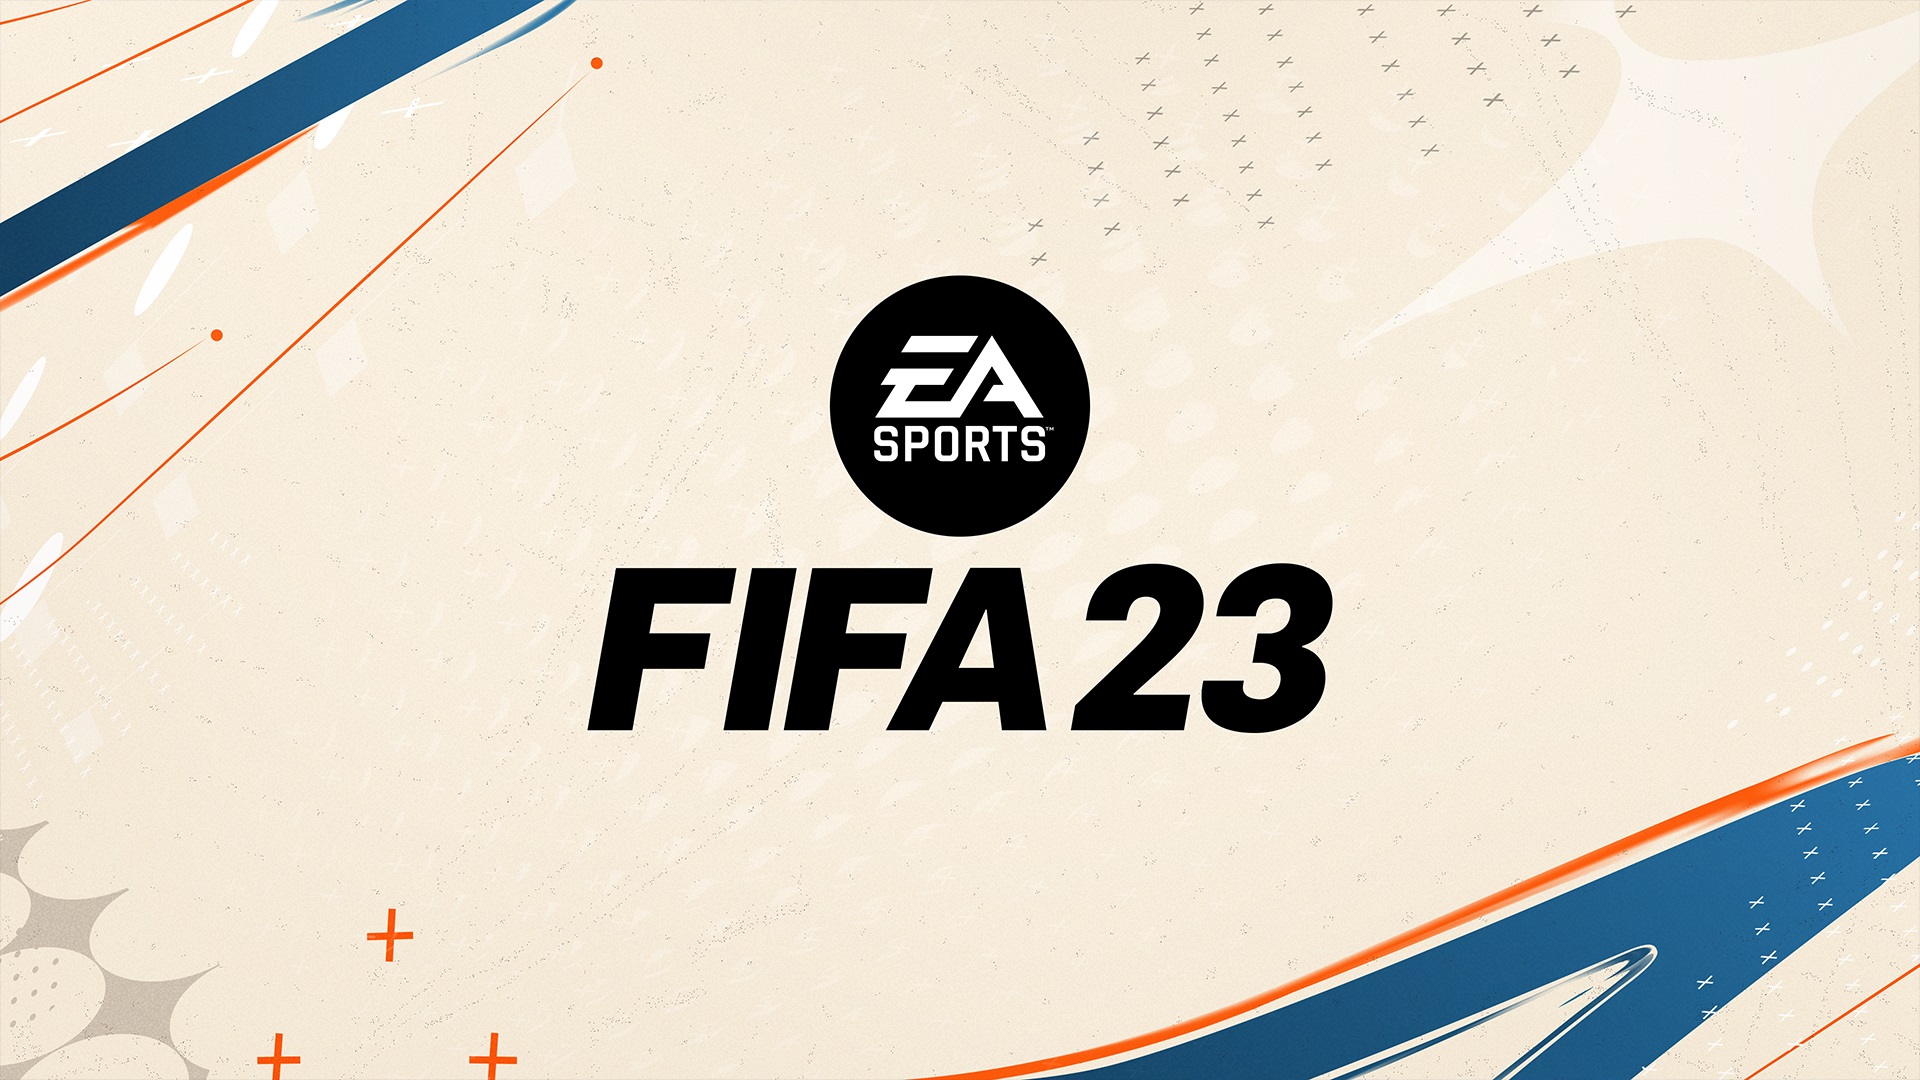 O FIFA 23 VAI SER INCRIVEL COM ESSA NOVIDADE! 